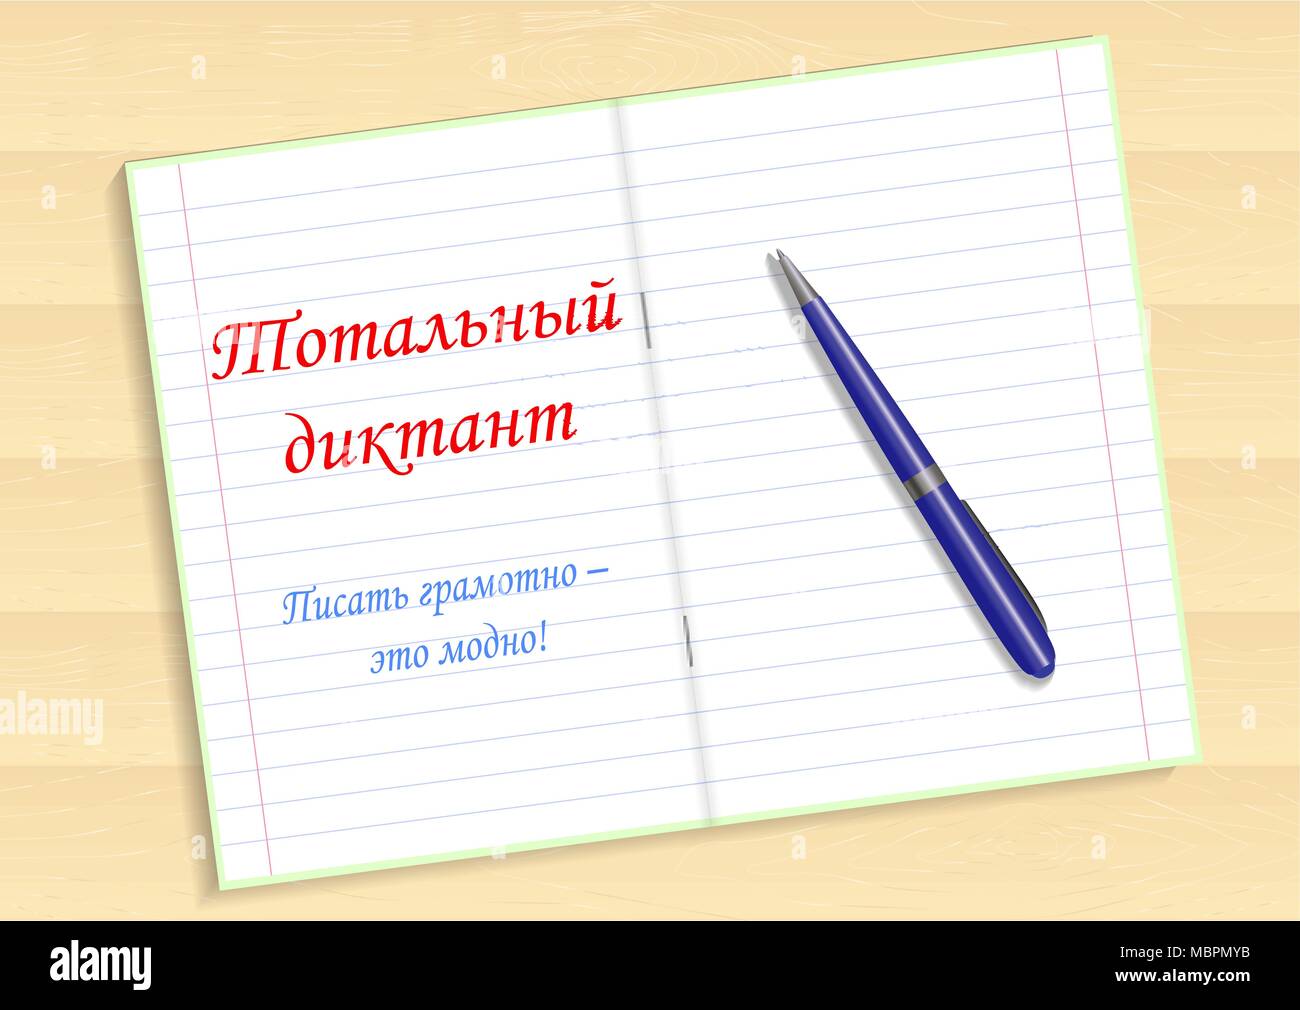 Roter Text in Russisch insgesamt Diktat, Schreiben grammatisch - es s  modisch. Notebook und Stift auf den Tisch. Vector Illustration  Stock-Vektorgrafik - Alamy